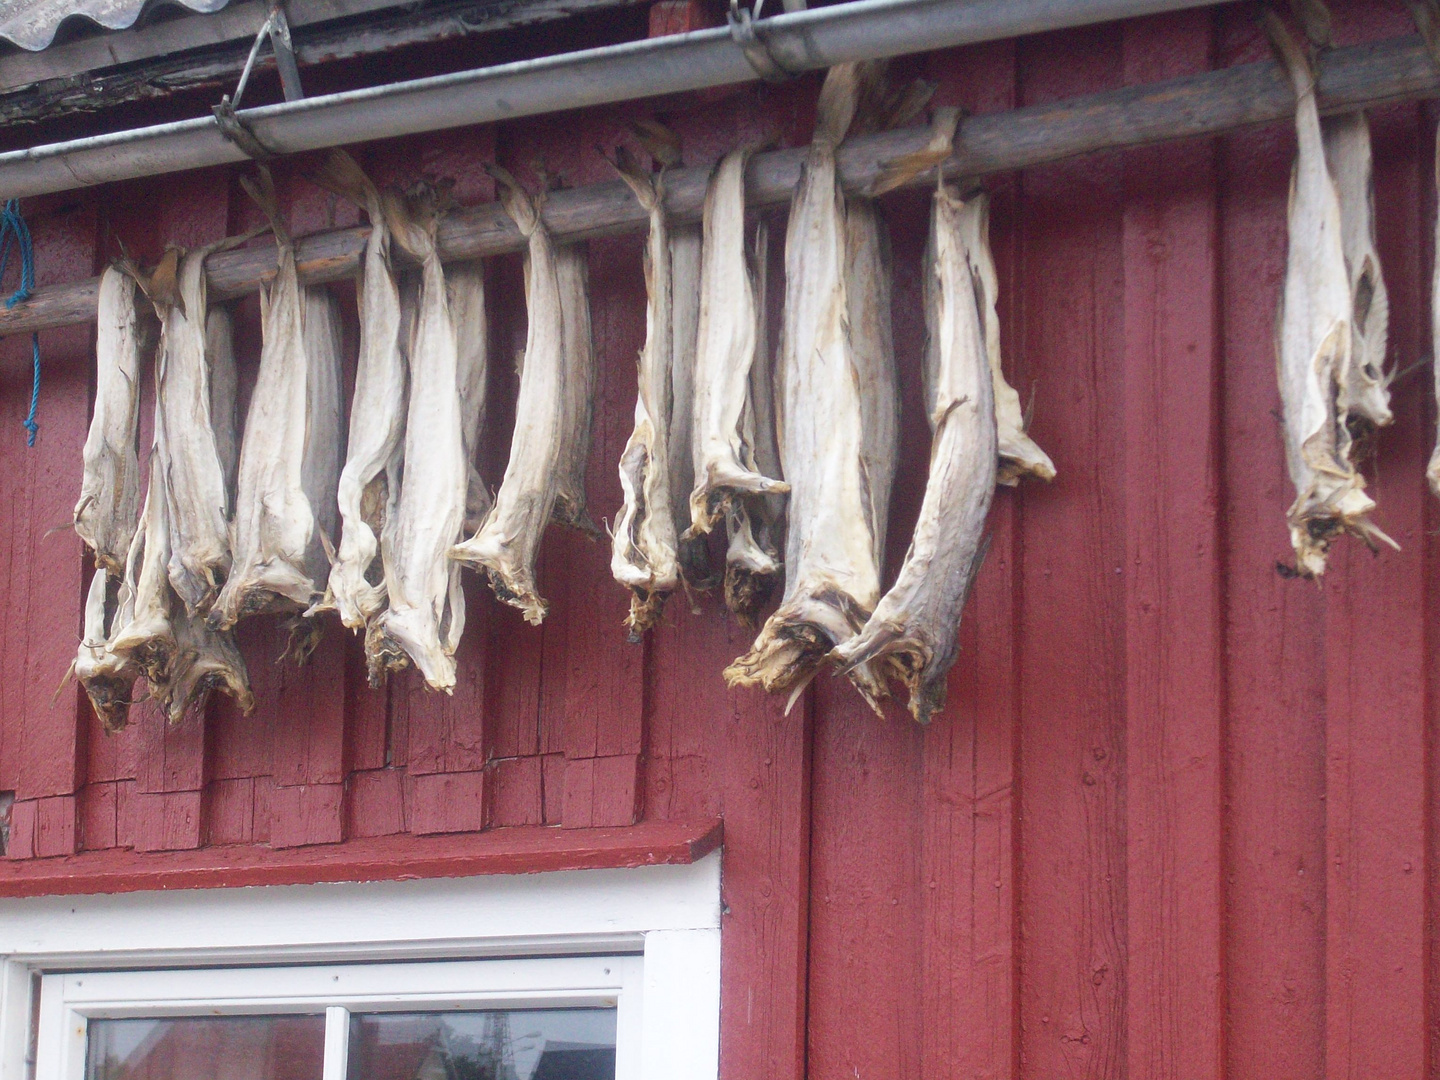 Das trochnen von Fische in Schweden